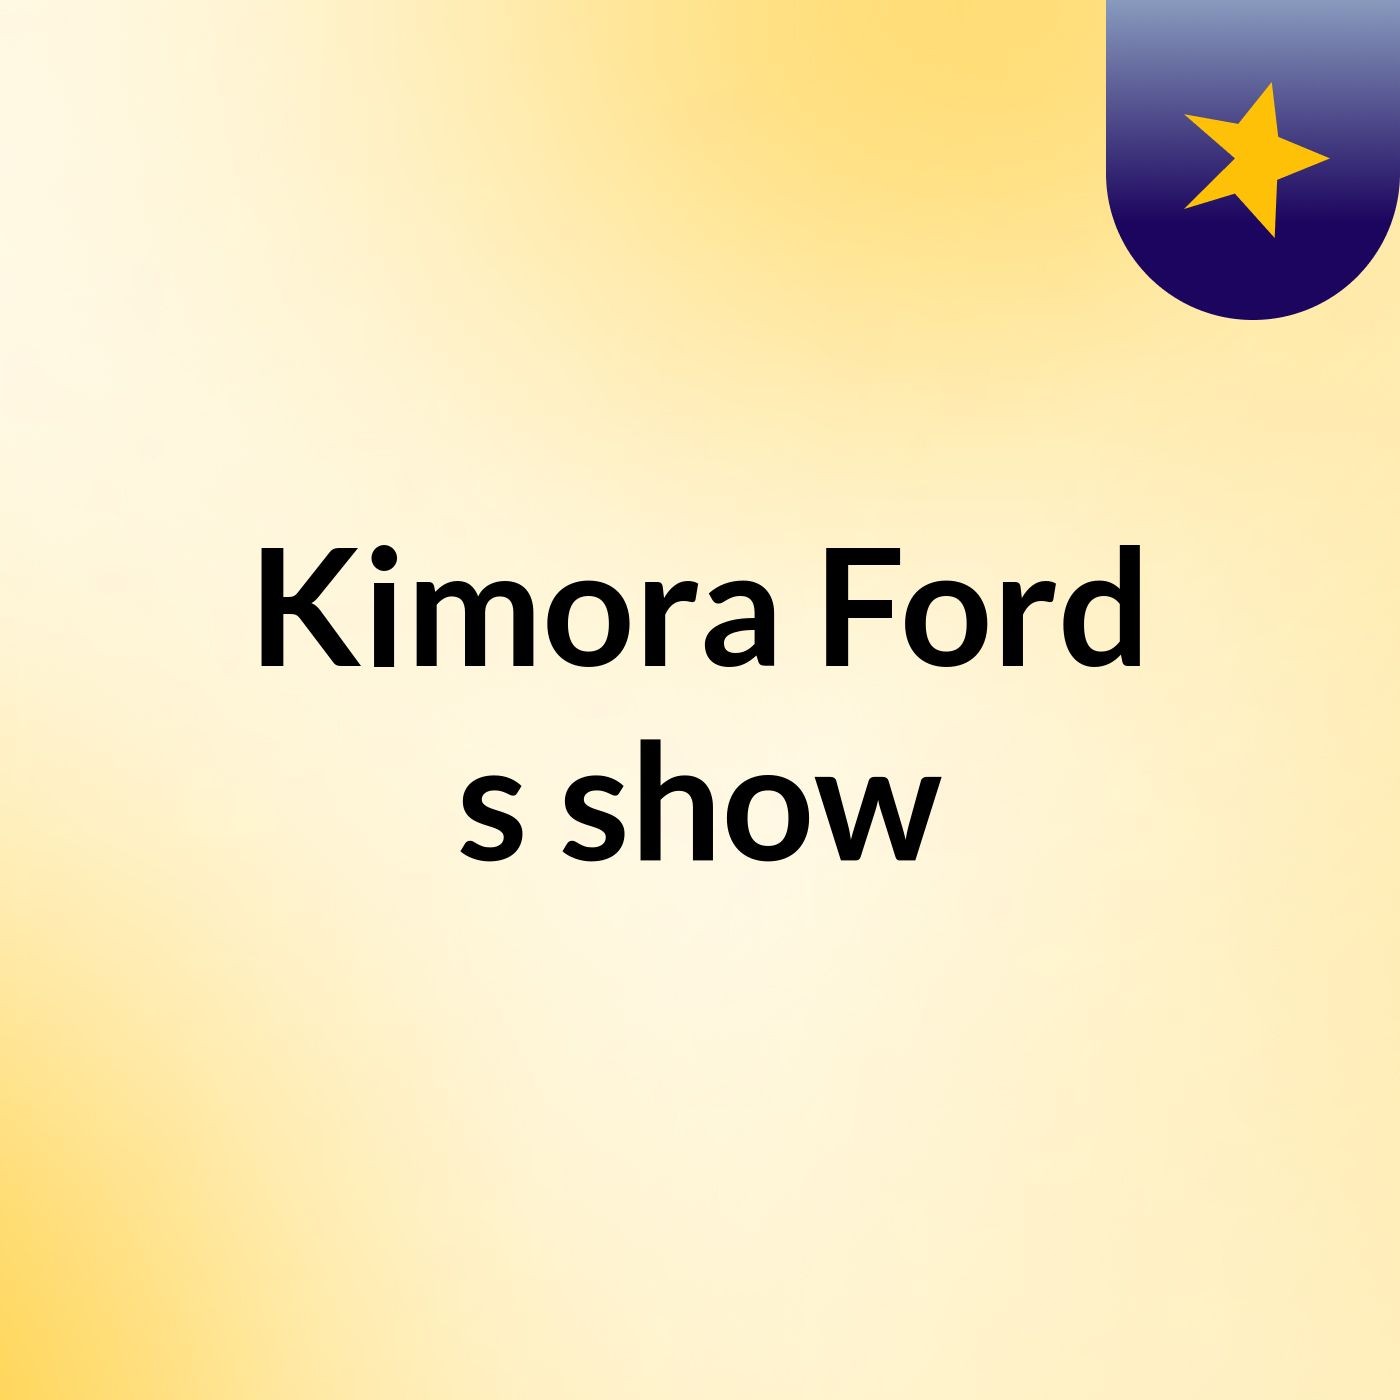 Kimora Ford's show